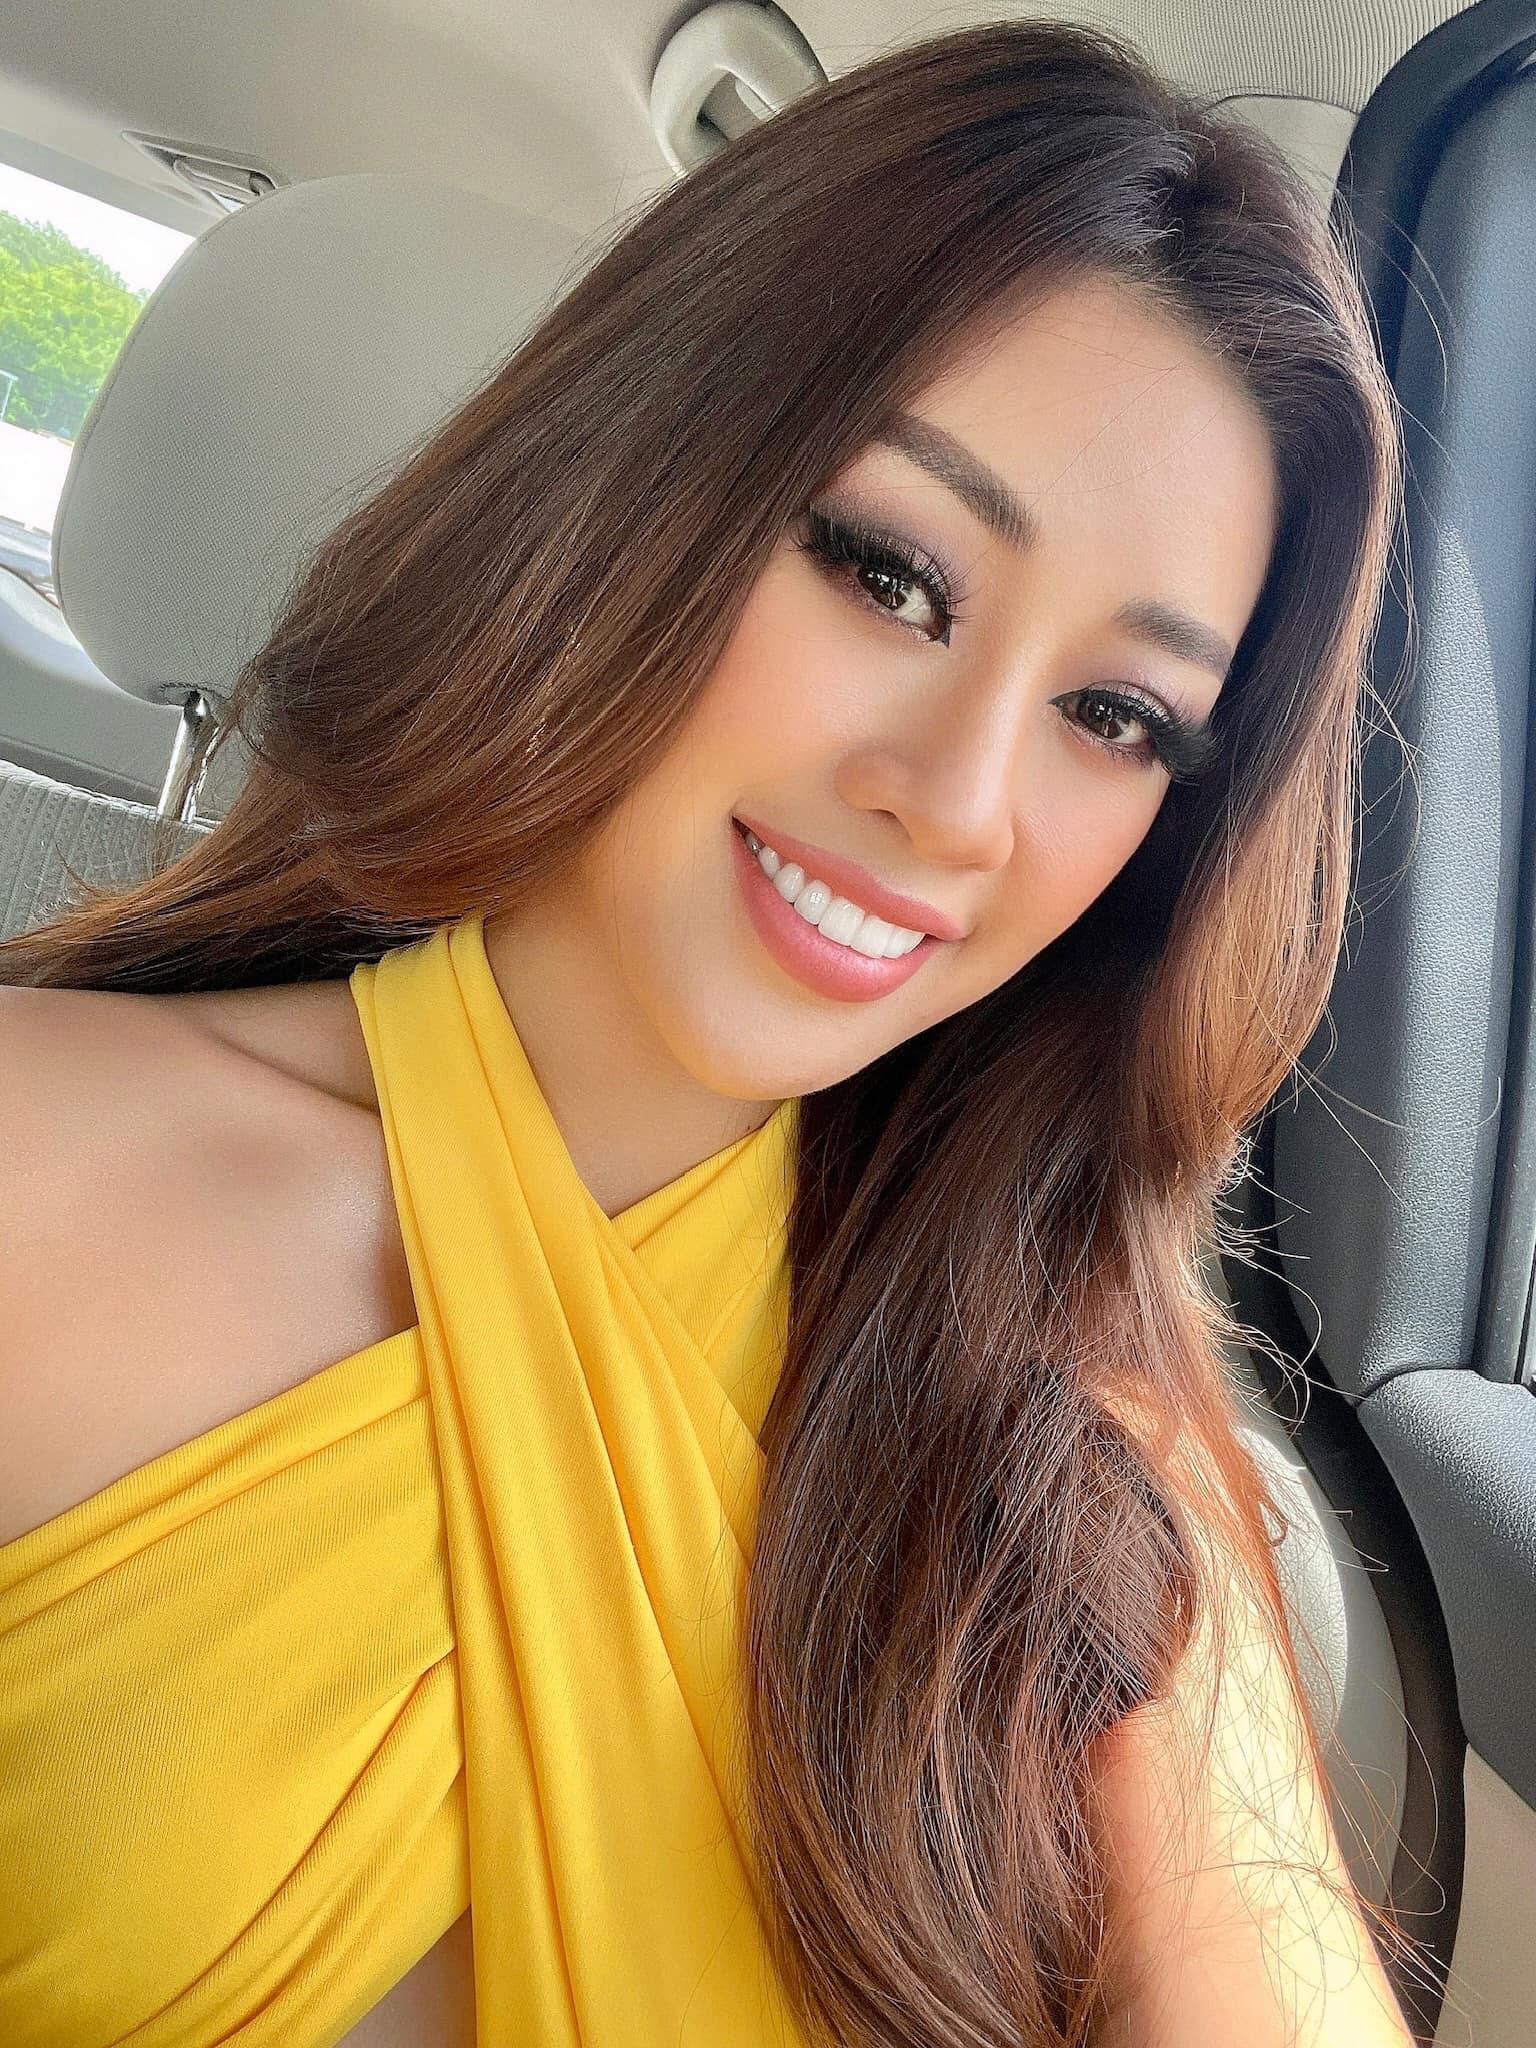 Khánh Vân tiếp tục tỏa sáng tại Miss Universe 2020 khi diện váy vàng chóe, cắt xẻ táo bạo - Ảnh 4.